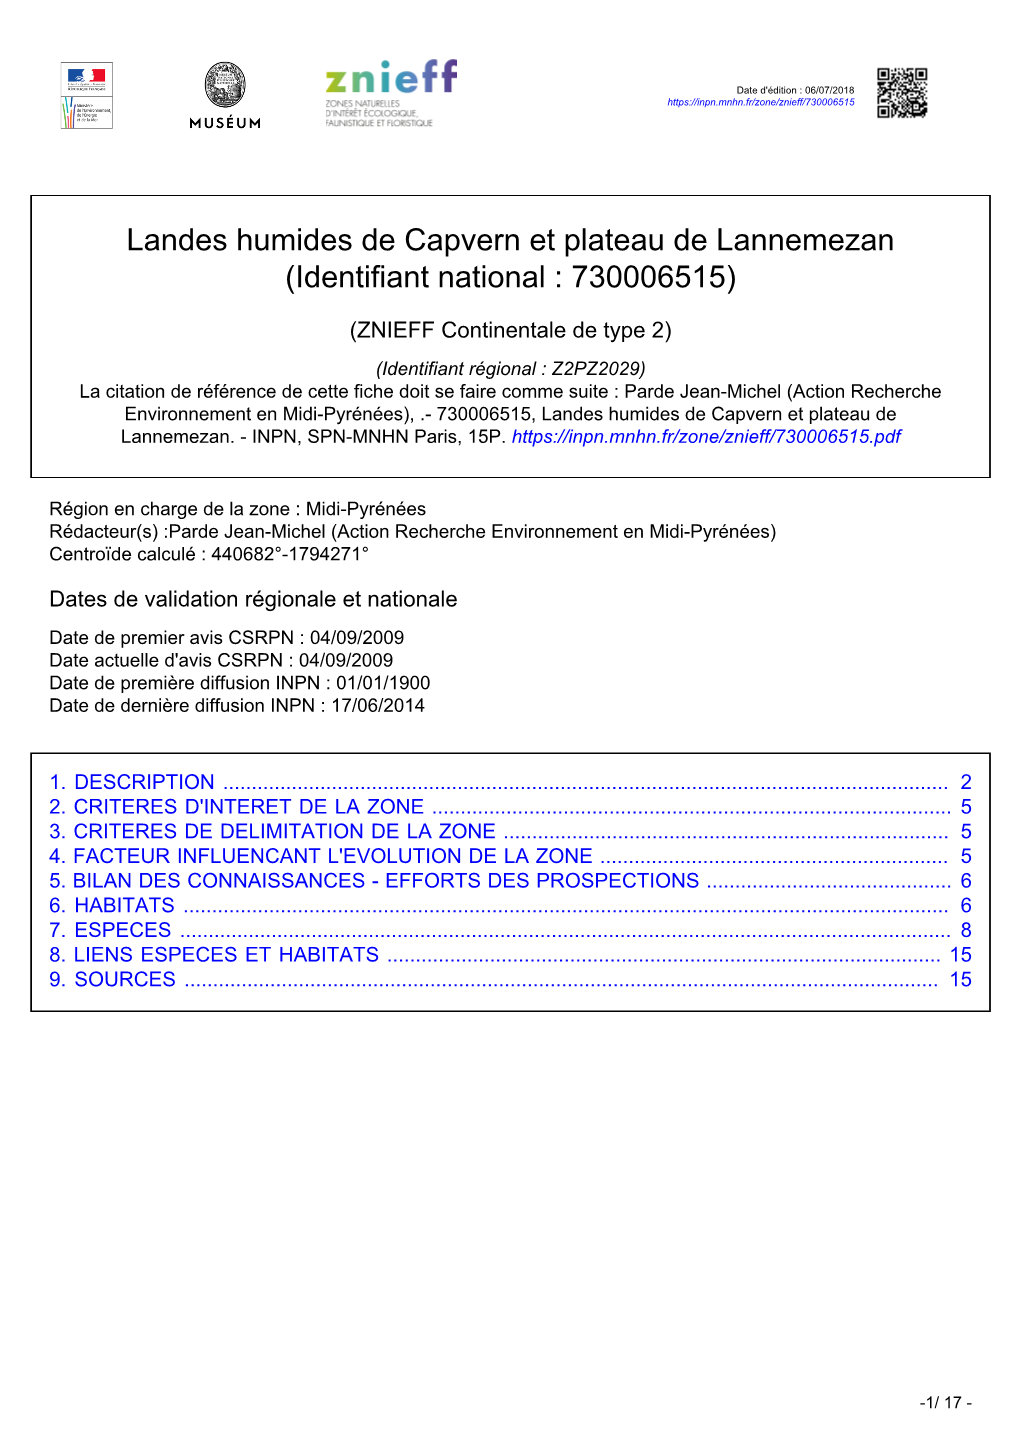 Landes Humides De Capvern Et Plateau De Lannemezan (Identifiant National : 730006515)